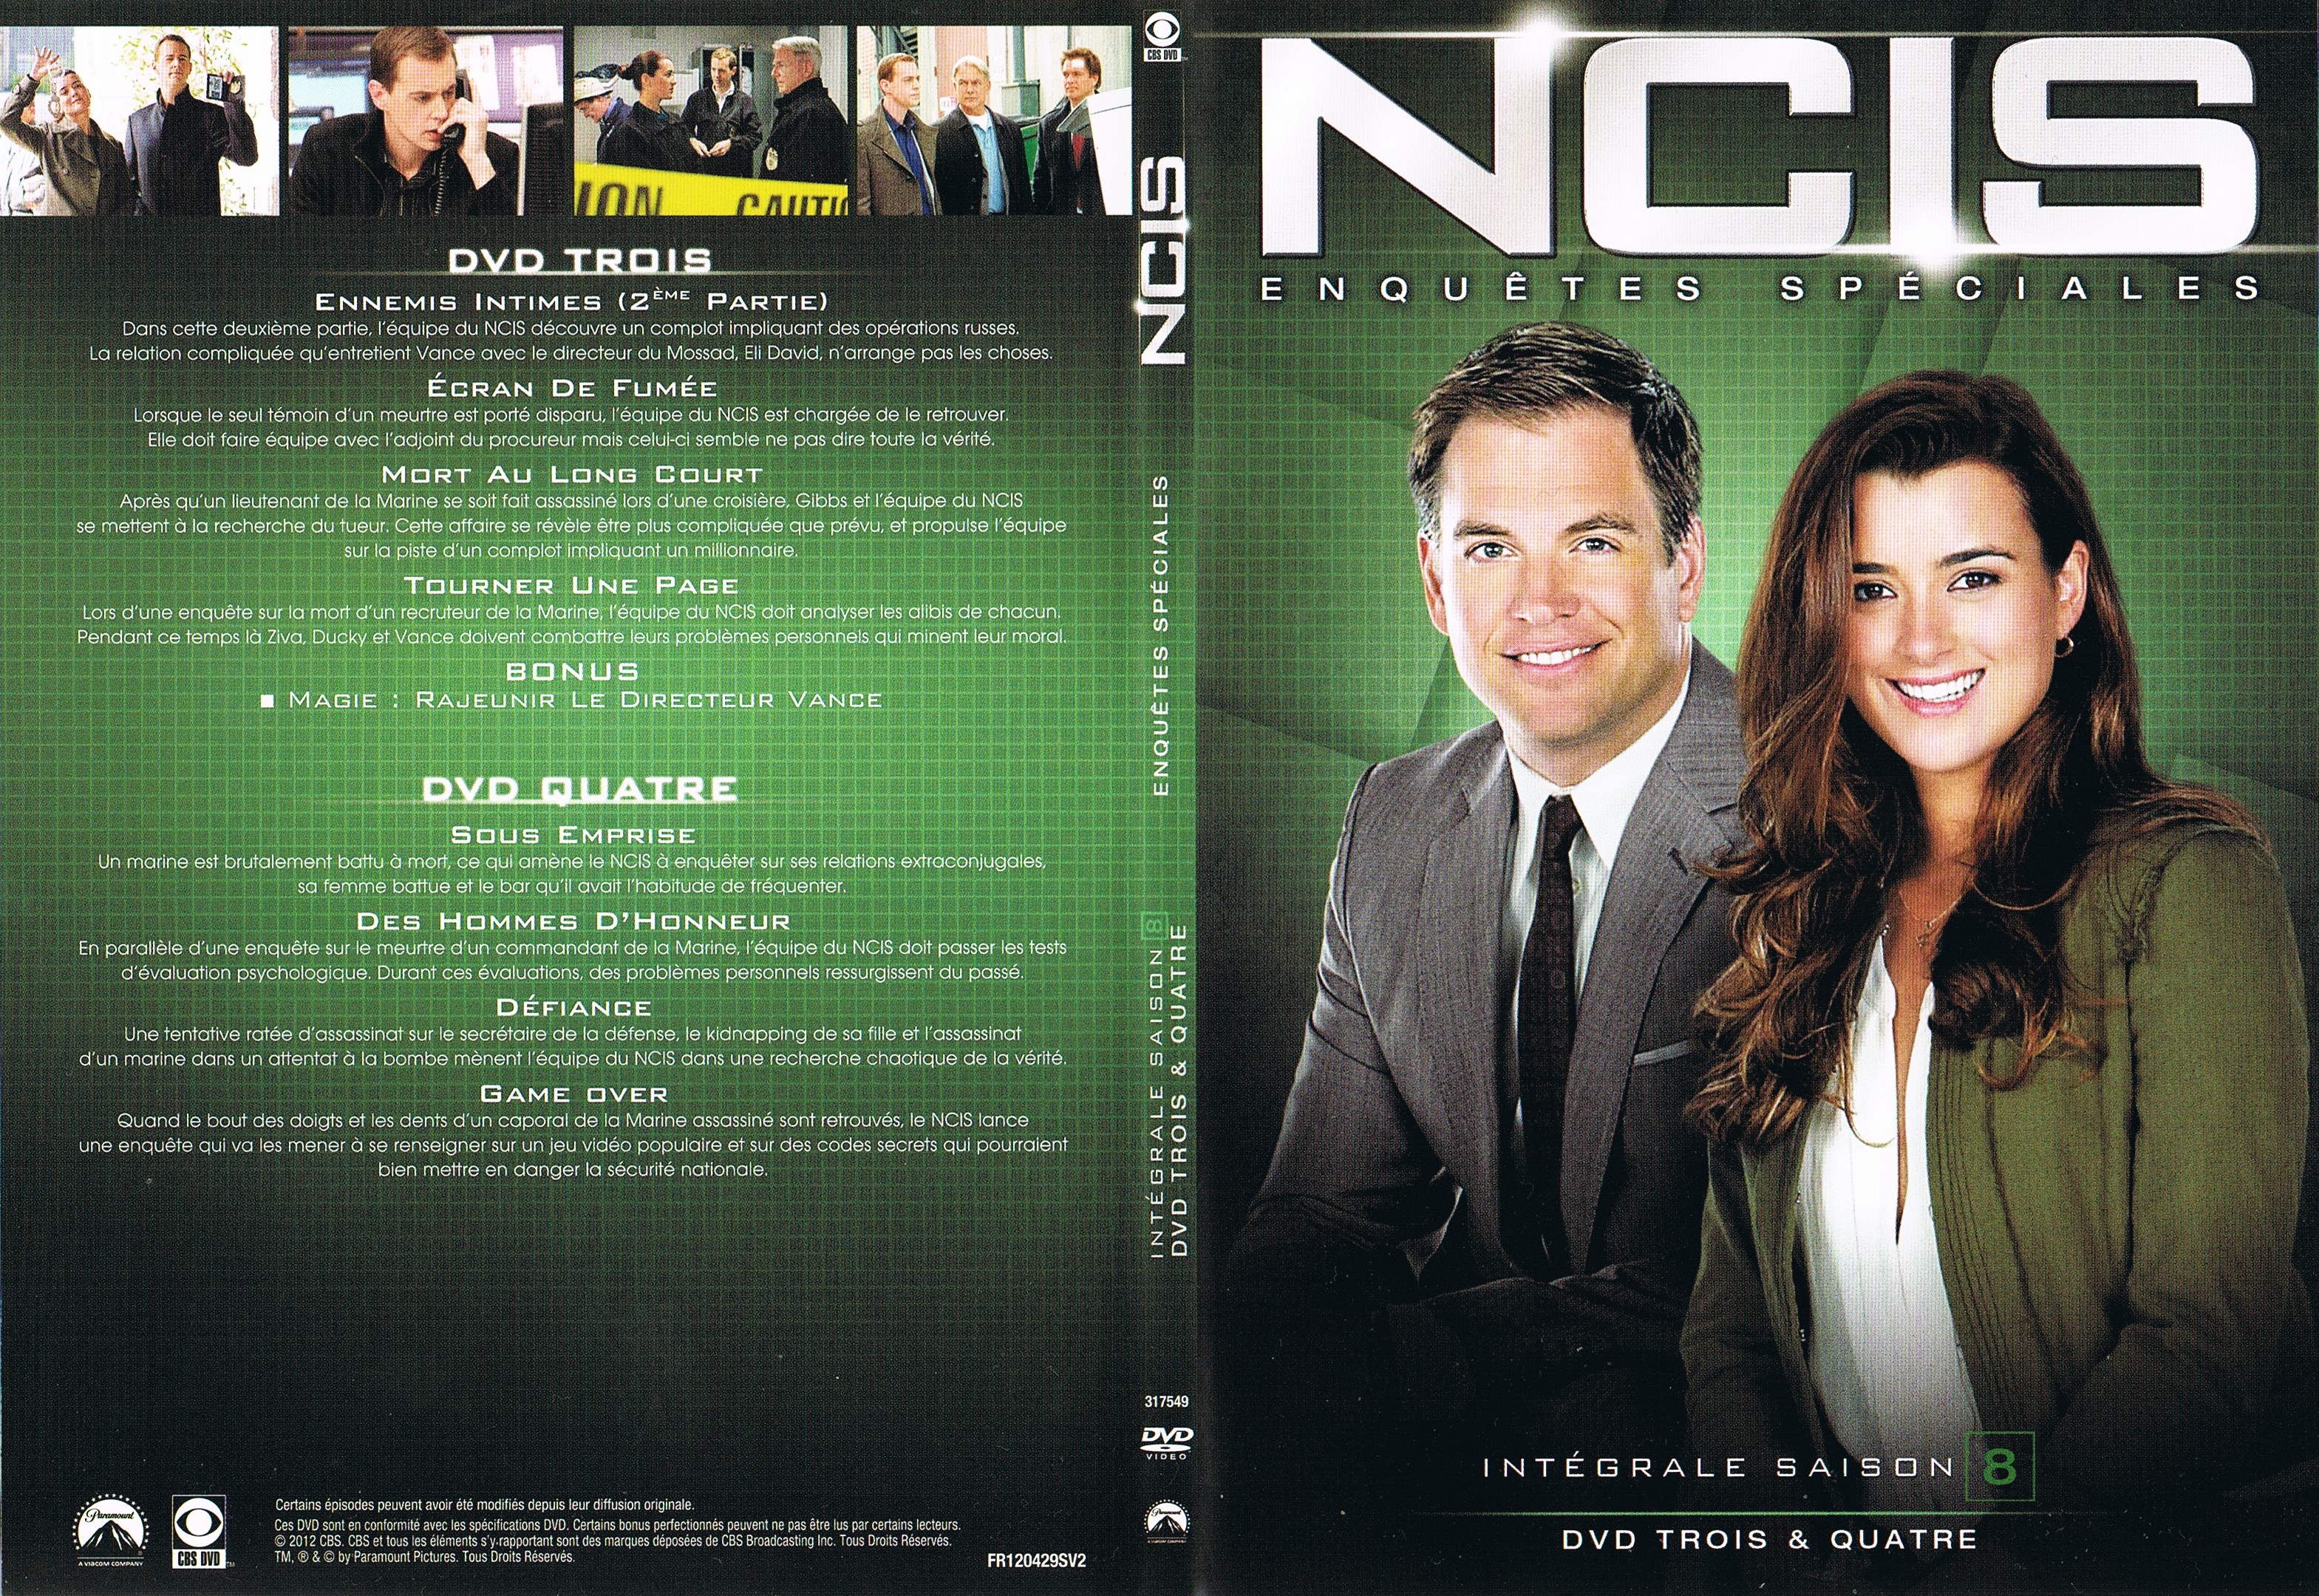 Jaquette DVD NCIS Saison 8 DVD 3 & 4